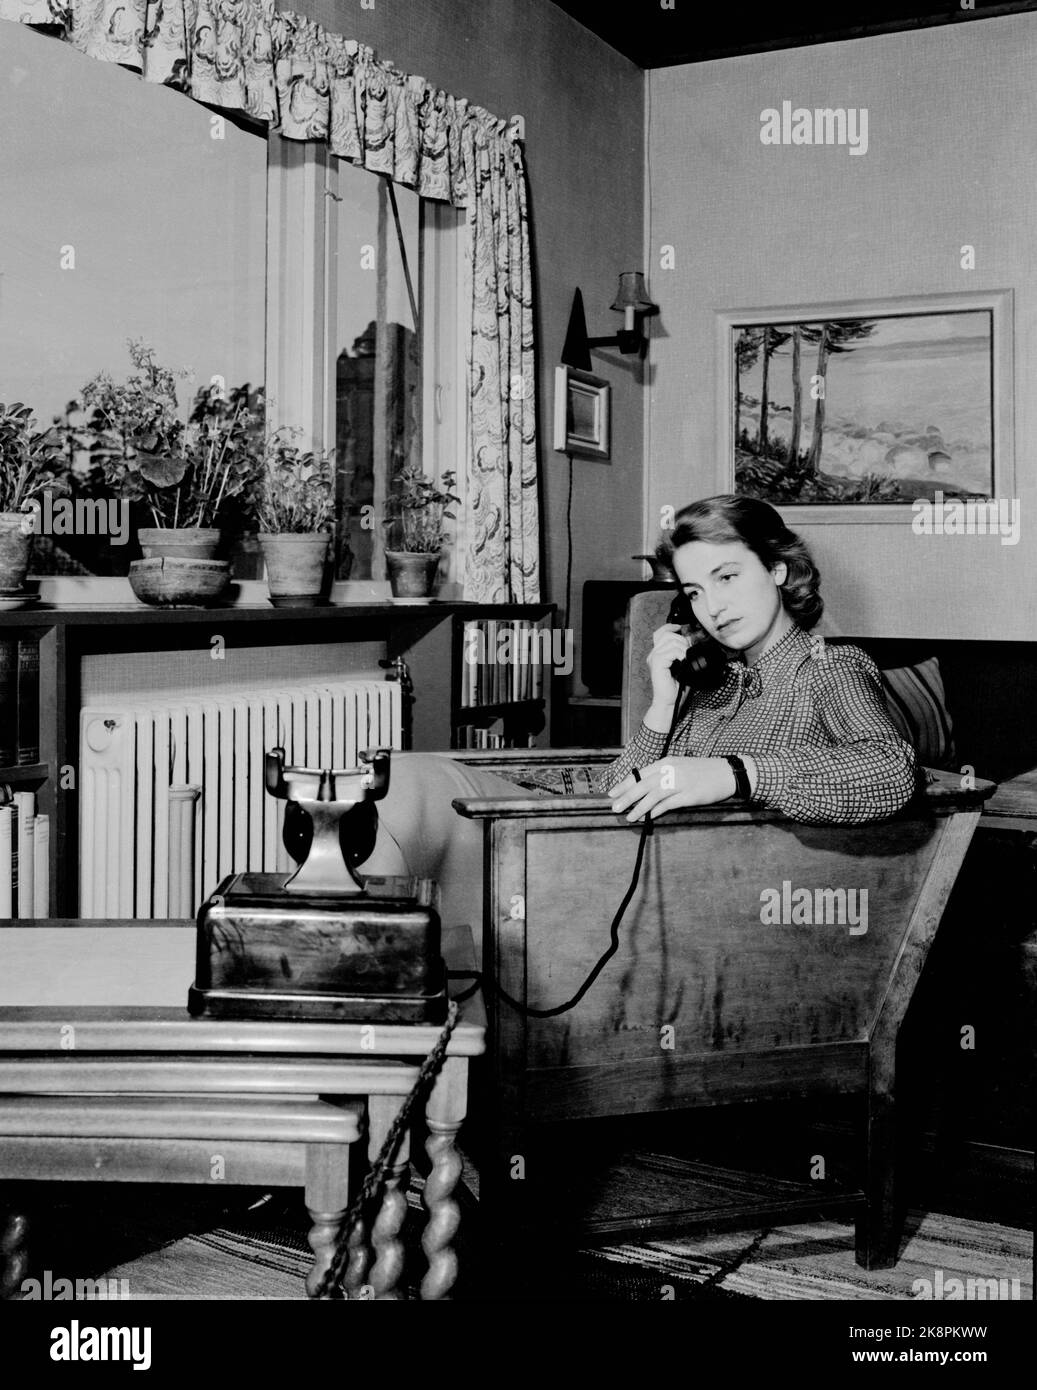 Oslo194702 la Norvège a établi une connexion téléphonique avec les États-Unis: Voici une illustration. Intérieur d'un salon avec une femme sérieuse parlant au téléphone. Photo: NTB / NTB Banque D'Images